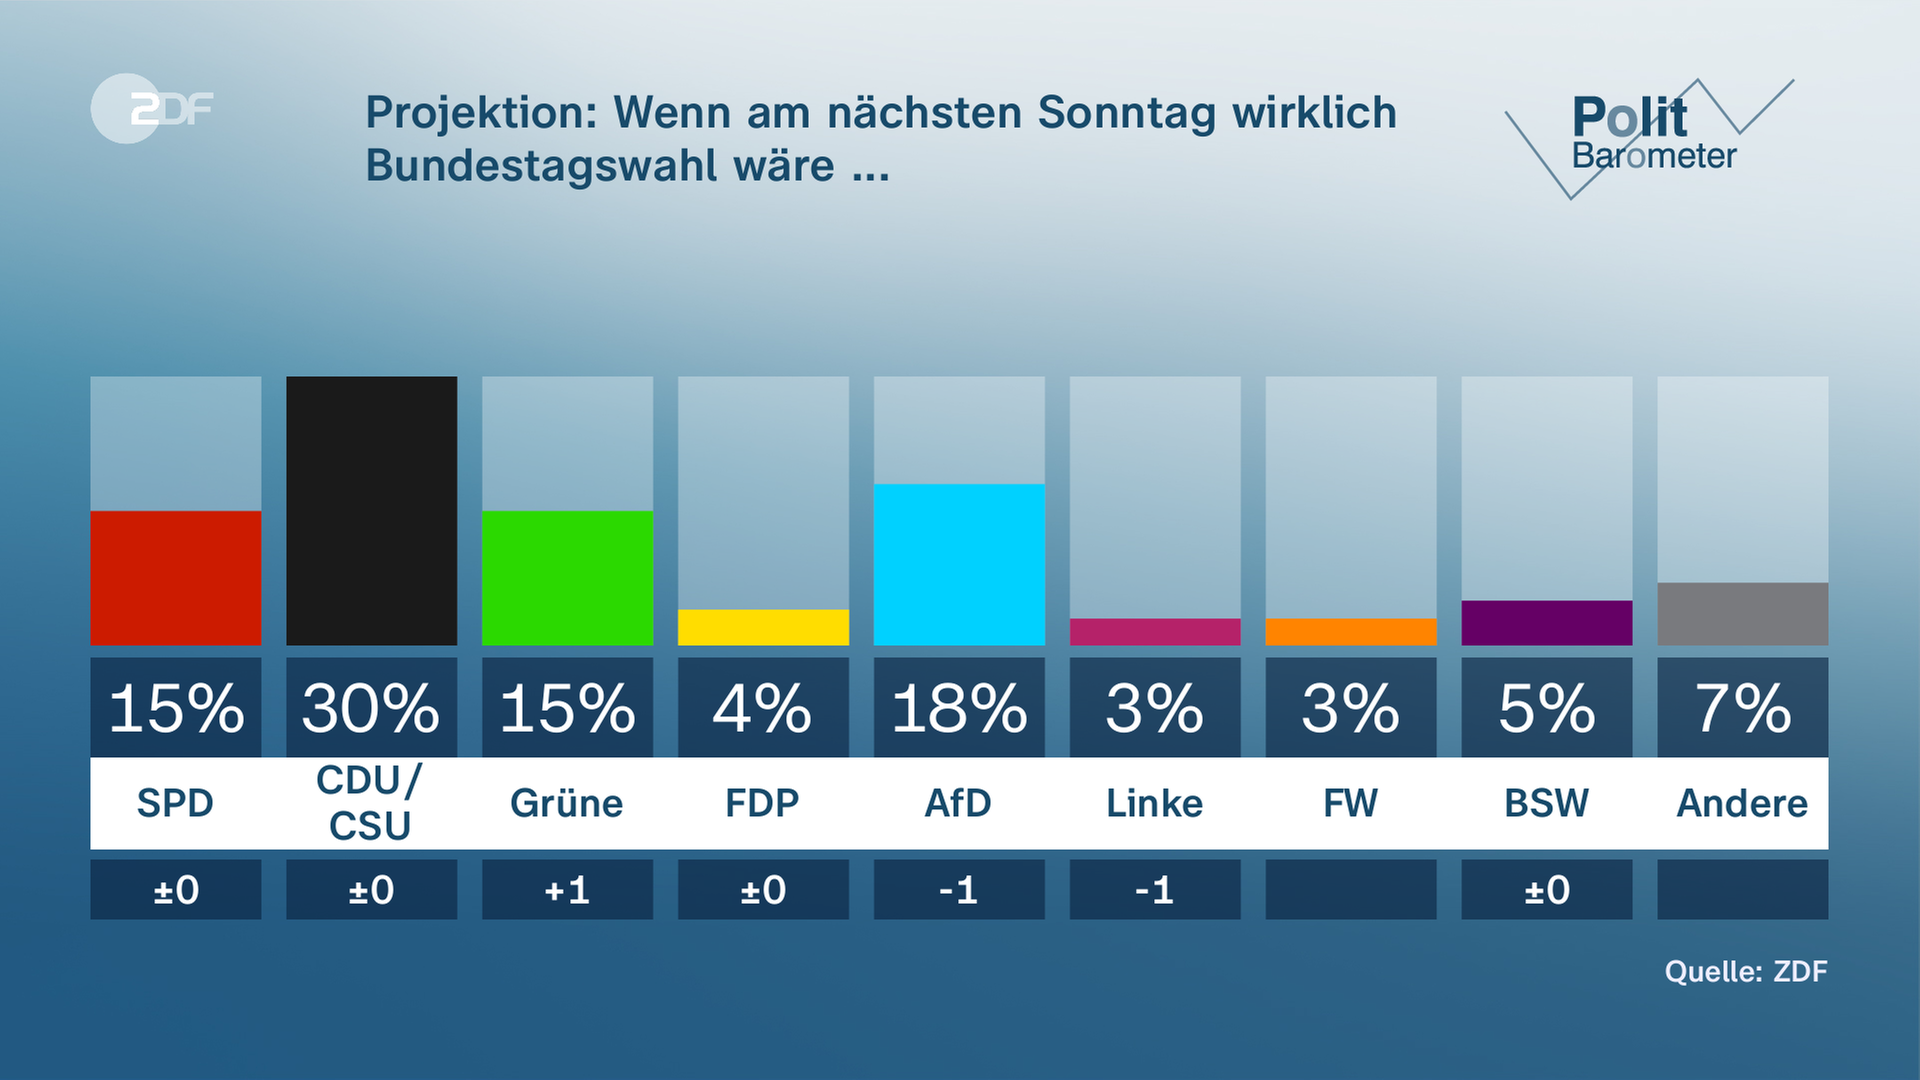 Politbarometer: In der Sonntagsfrage liegt die Union vorn (30 Prozent), dahinter AfD (18 Prozent), dann SPD und Grüne (jeweils 15 Prozent). Nicht im Bundestag wäre die FDP (4 Prozent).